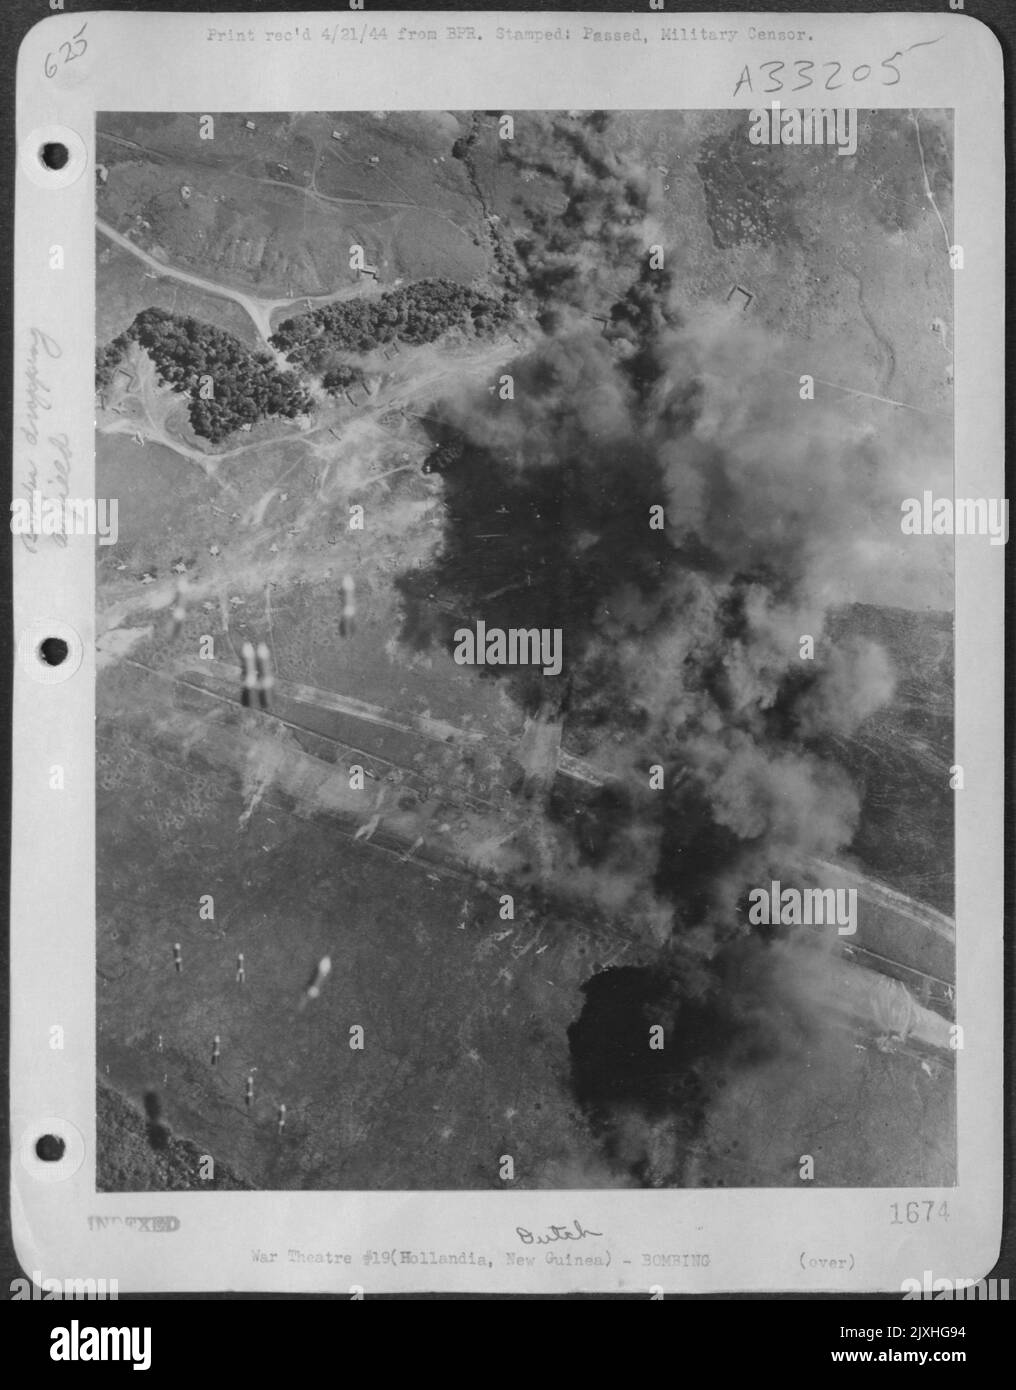 Bei drei schweren Angriffen zerstörten die Bomber von General MacArthur 288 feindliche Flugzeuge auf den japanischen Flugplätzen in Hollandia oder beschädigten sie irreparabel. Als riesige Wolken von schwarzen Rauchzeichen Flugzeuge zerschlugen, fallen mehr Bomben weg. Stockfoto